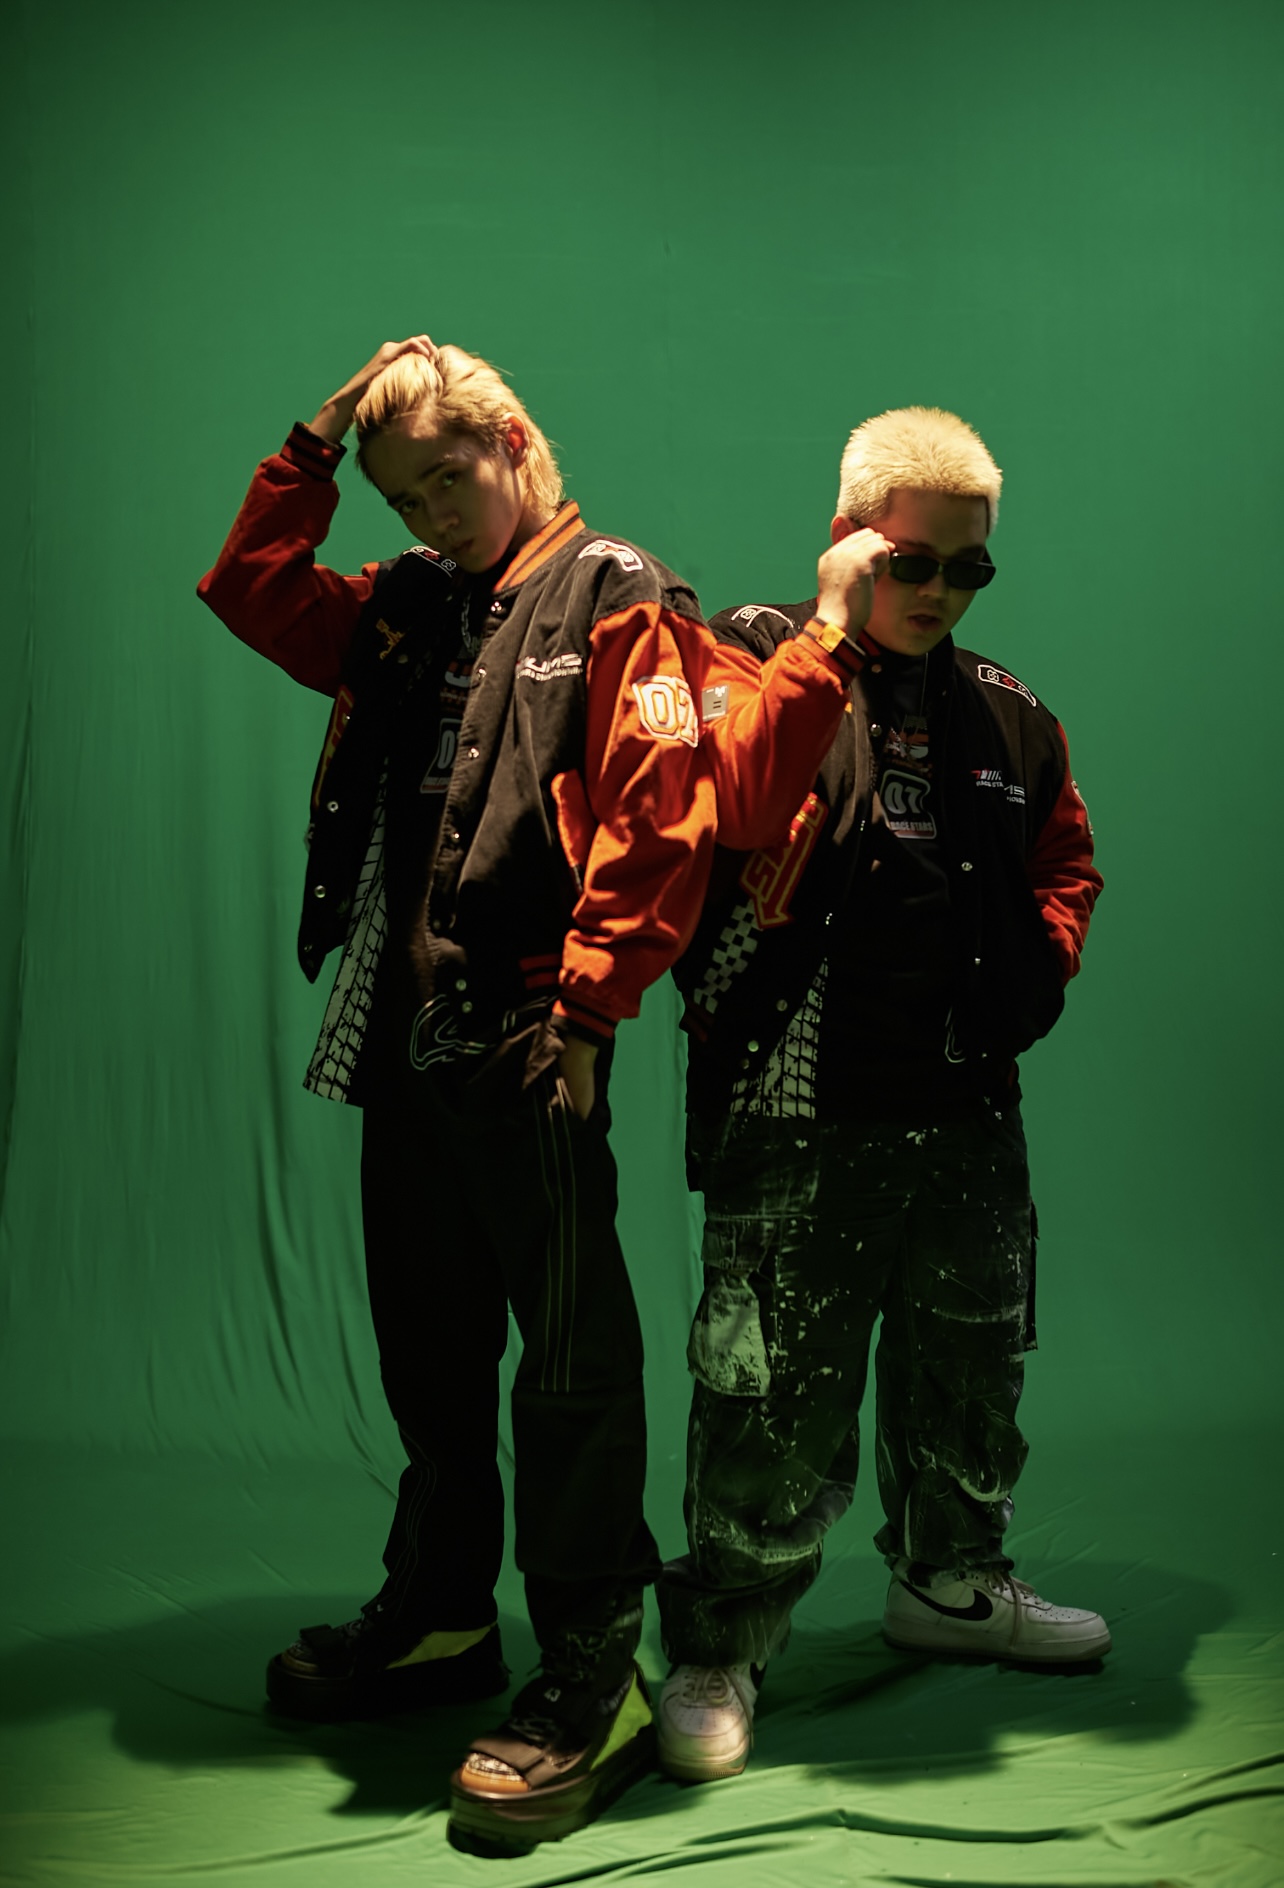  ‘Chiến thần battle rap’   Billy100 debut cực cháy với ‘Bay Lên Đáp Xuống’